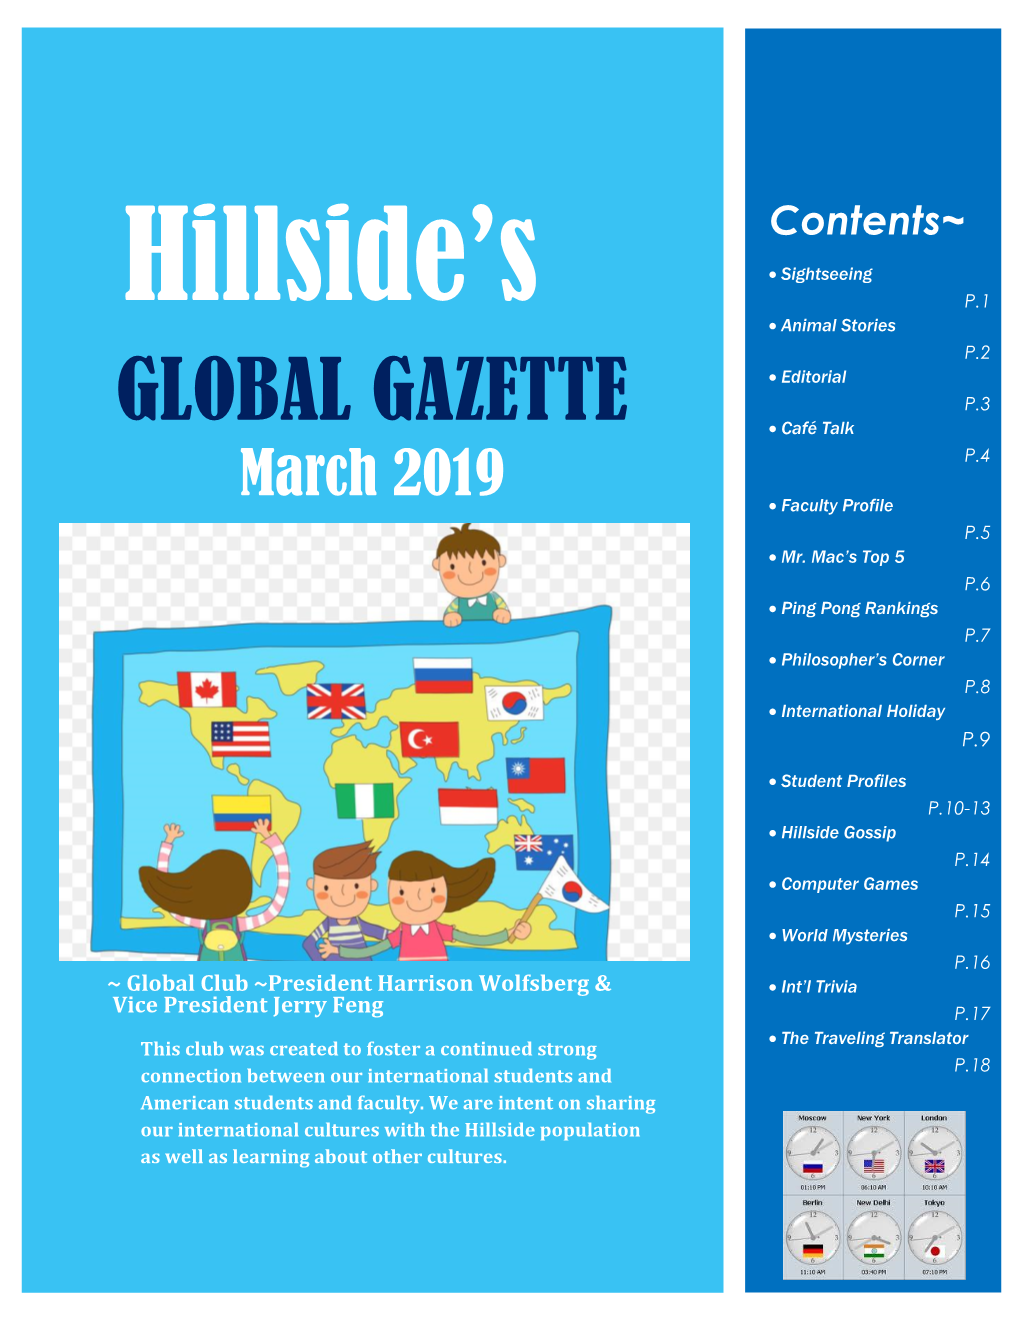 GLOBAL GAZETTE P.3  Café Talk P.4 March 2019  Faculty Profile P.5  Mr